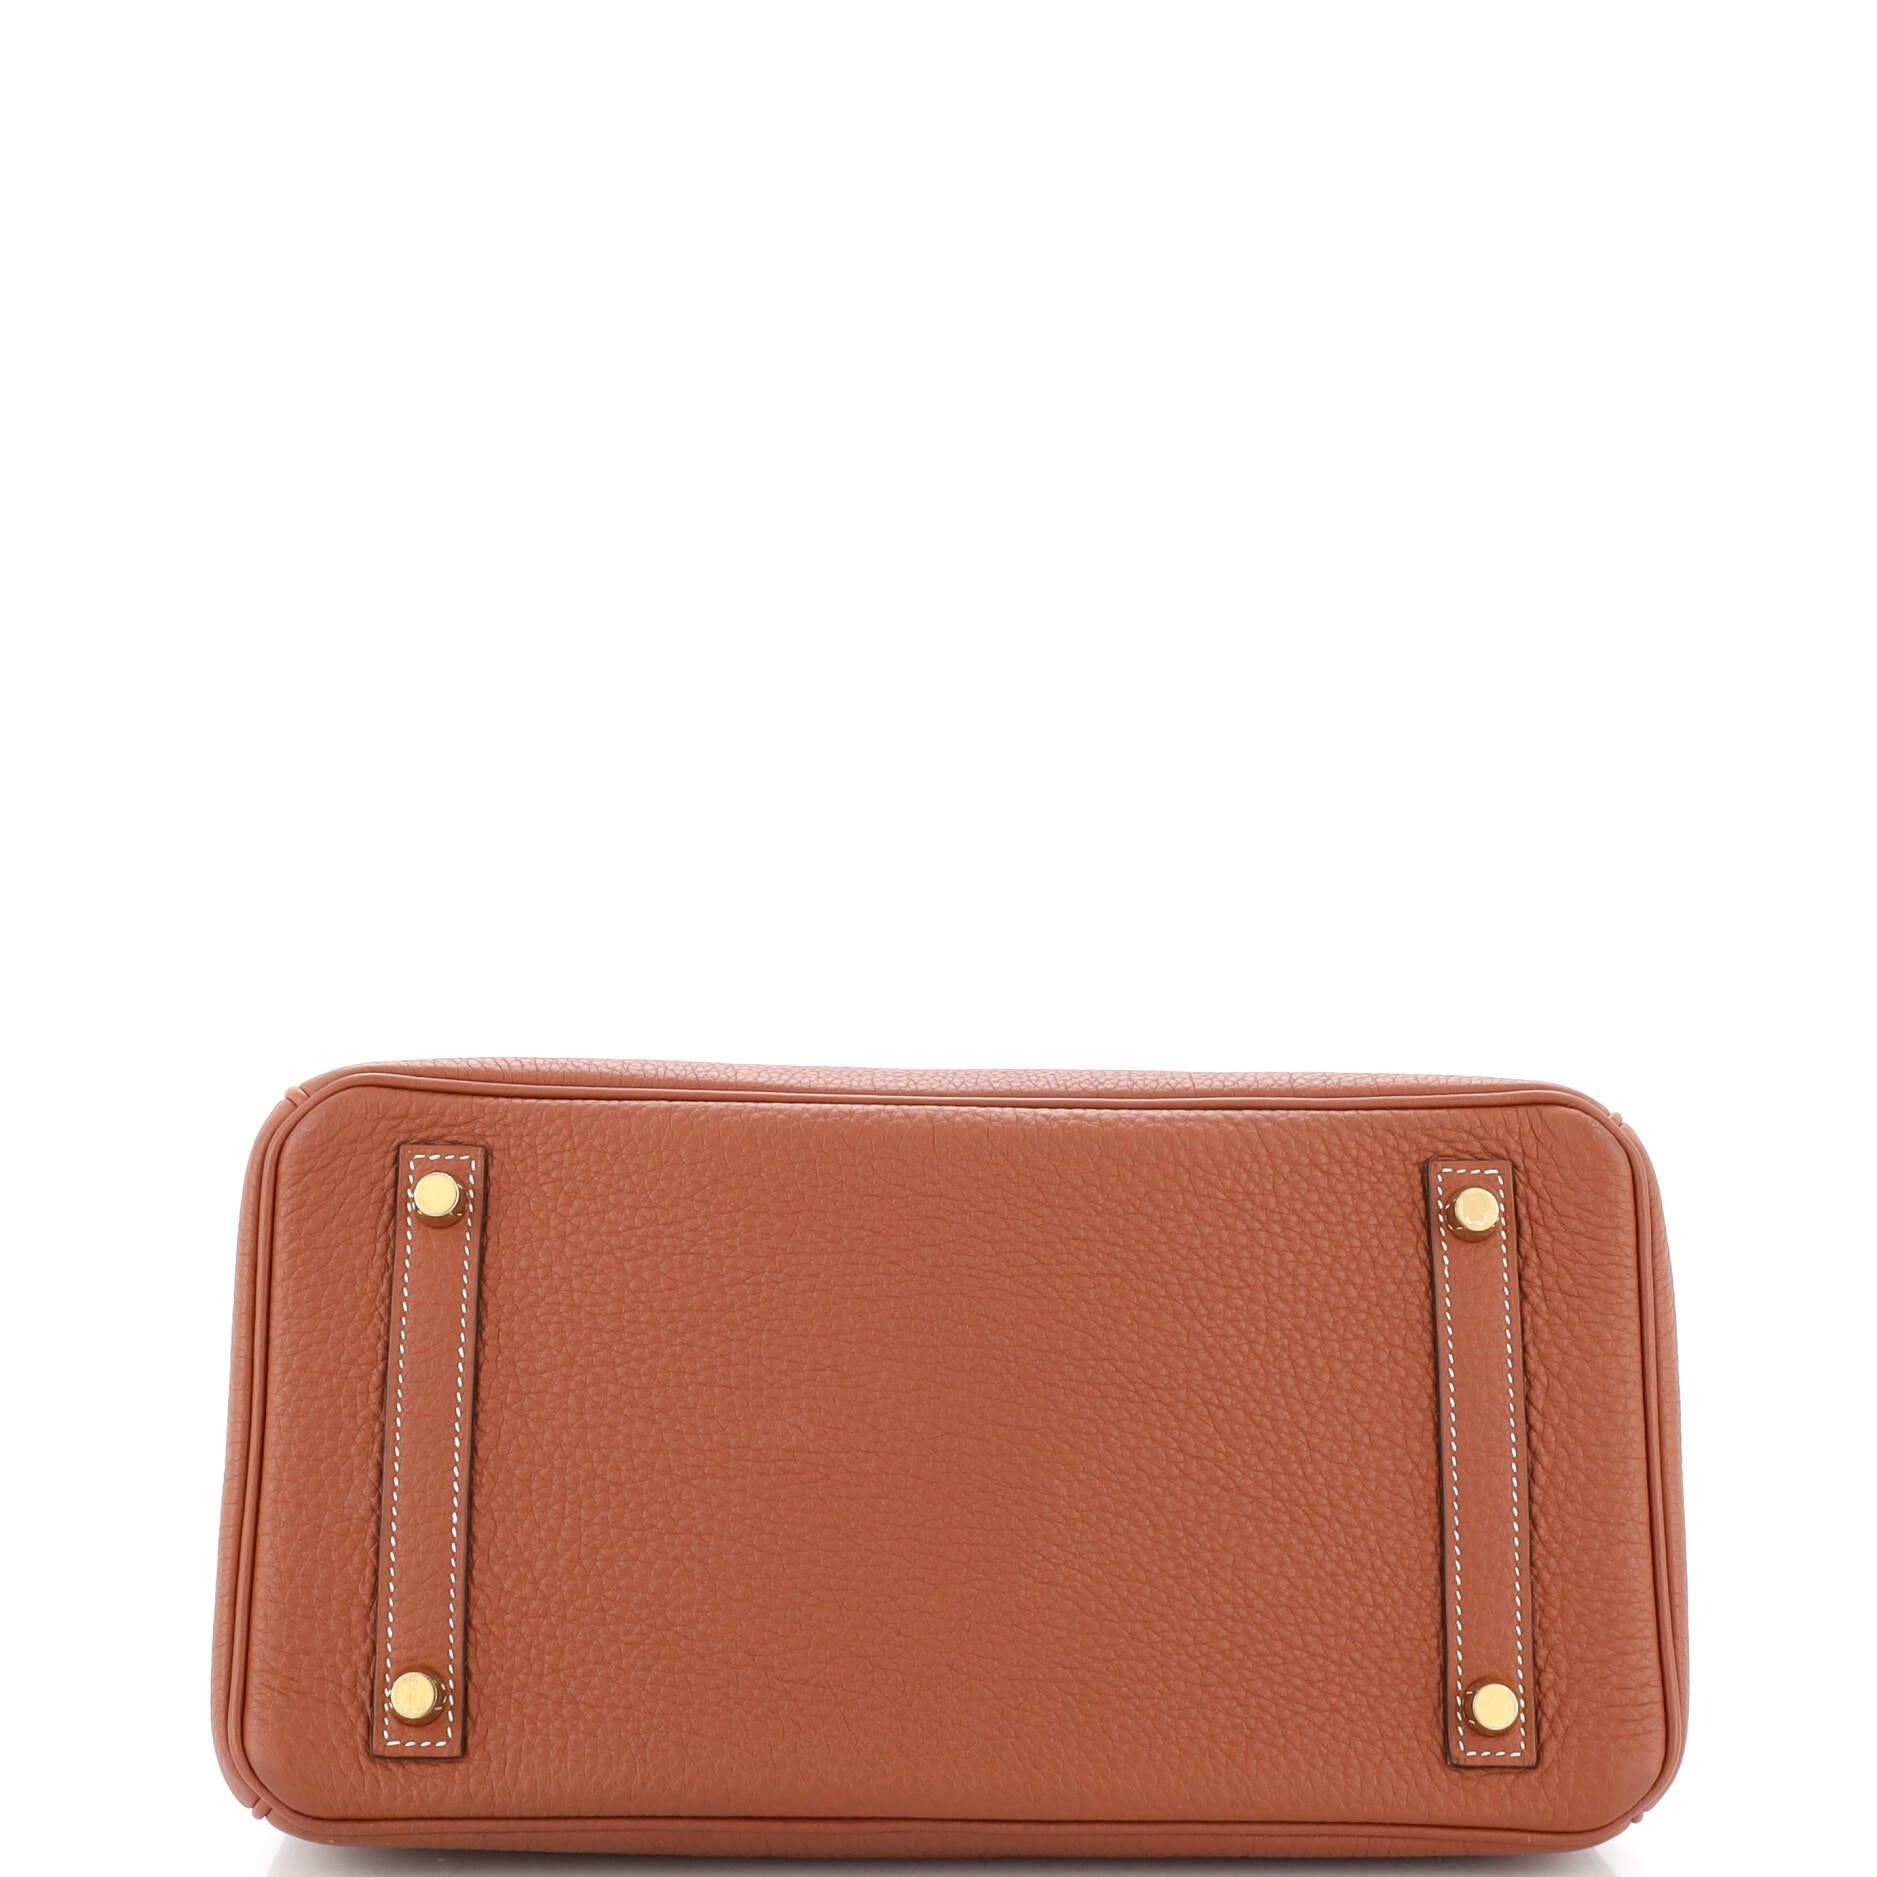 Women's Hermes Birkin Handbag Sienne Togo with Gold Hardware 30